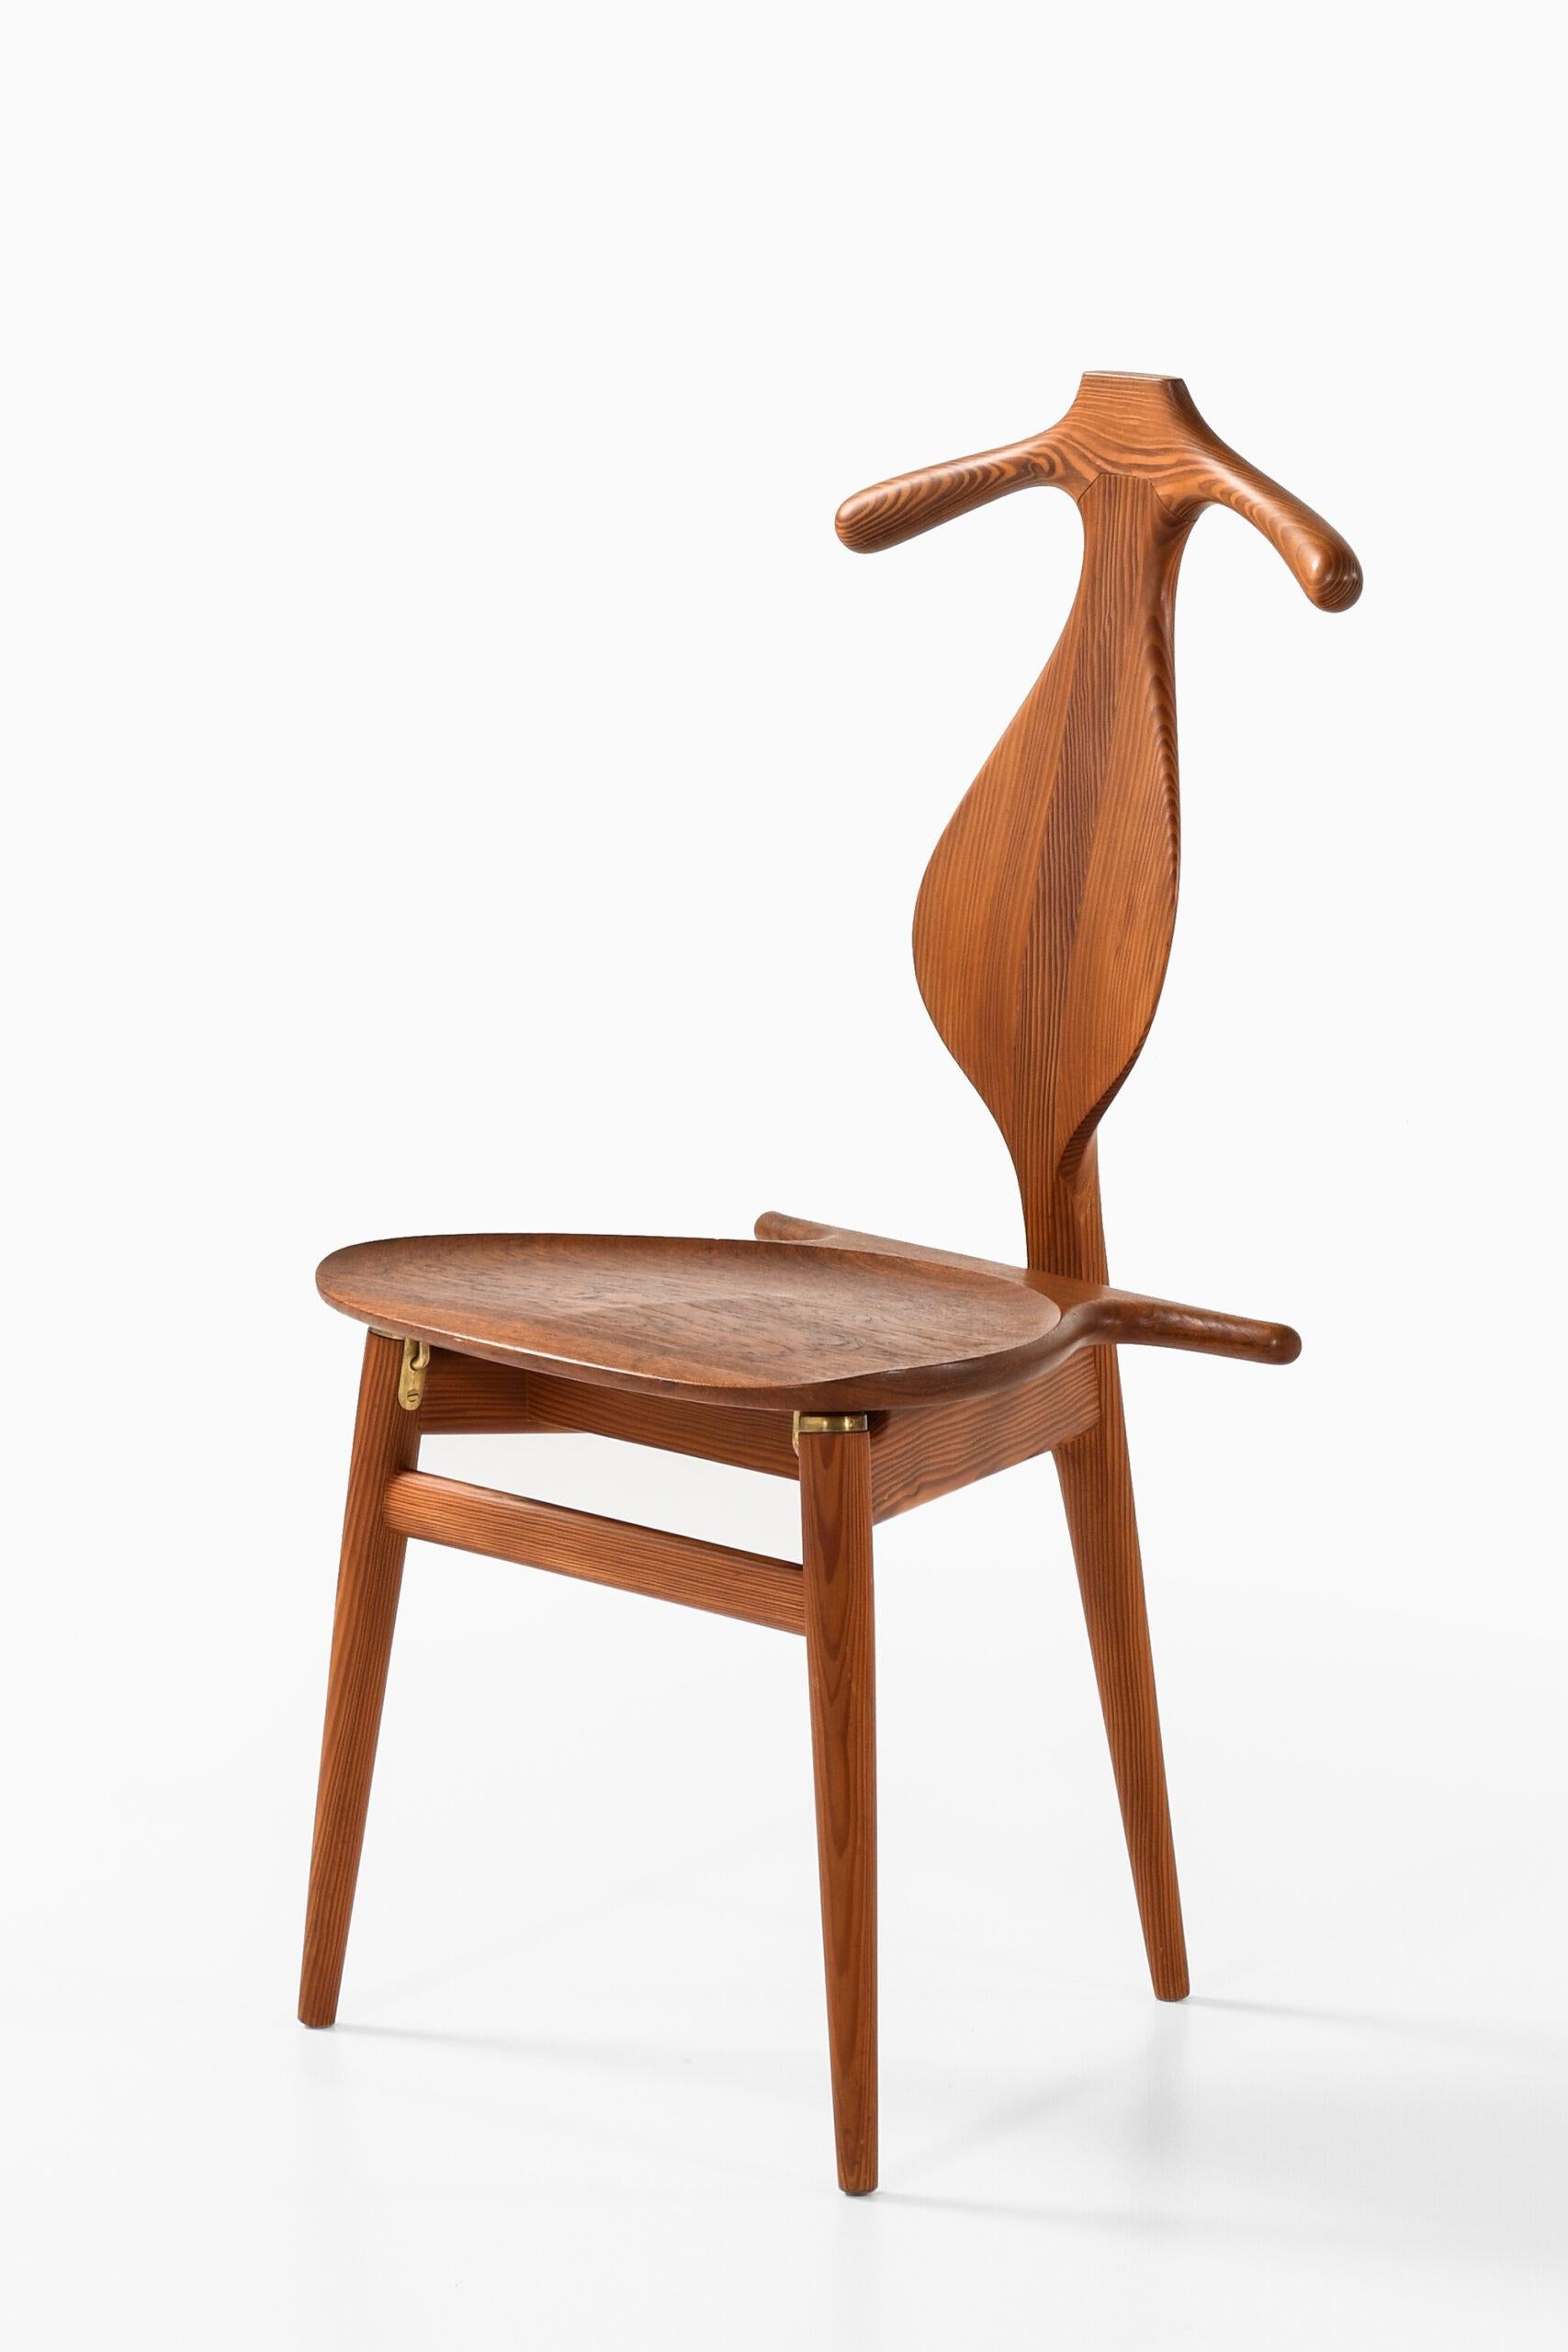 Mid-20th Century Hans Wegner Valet Chair Produced by Cabinetmaker Johannes Hansen in Denmark